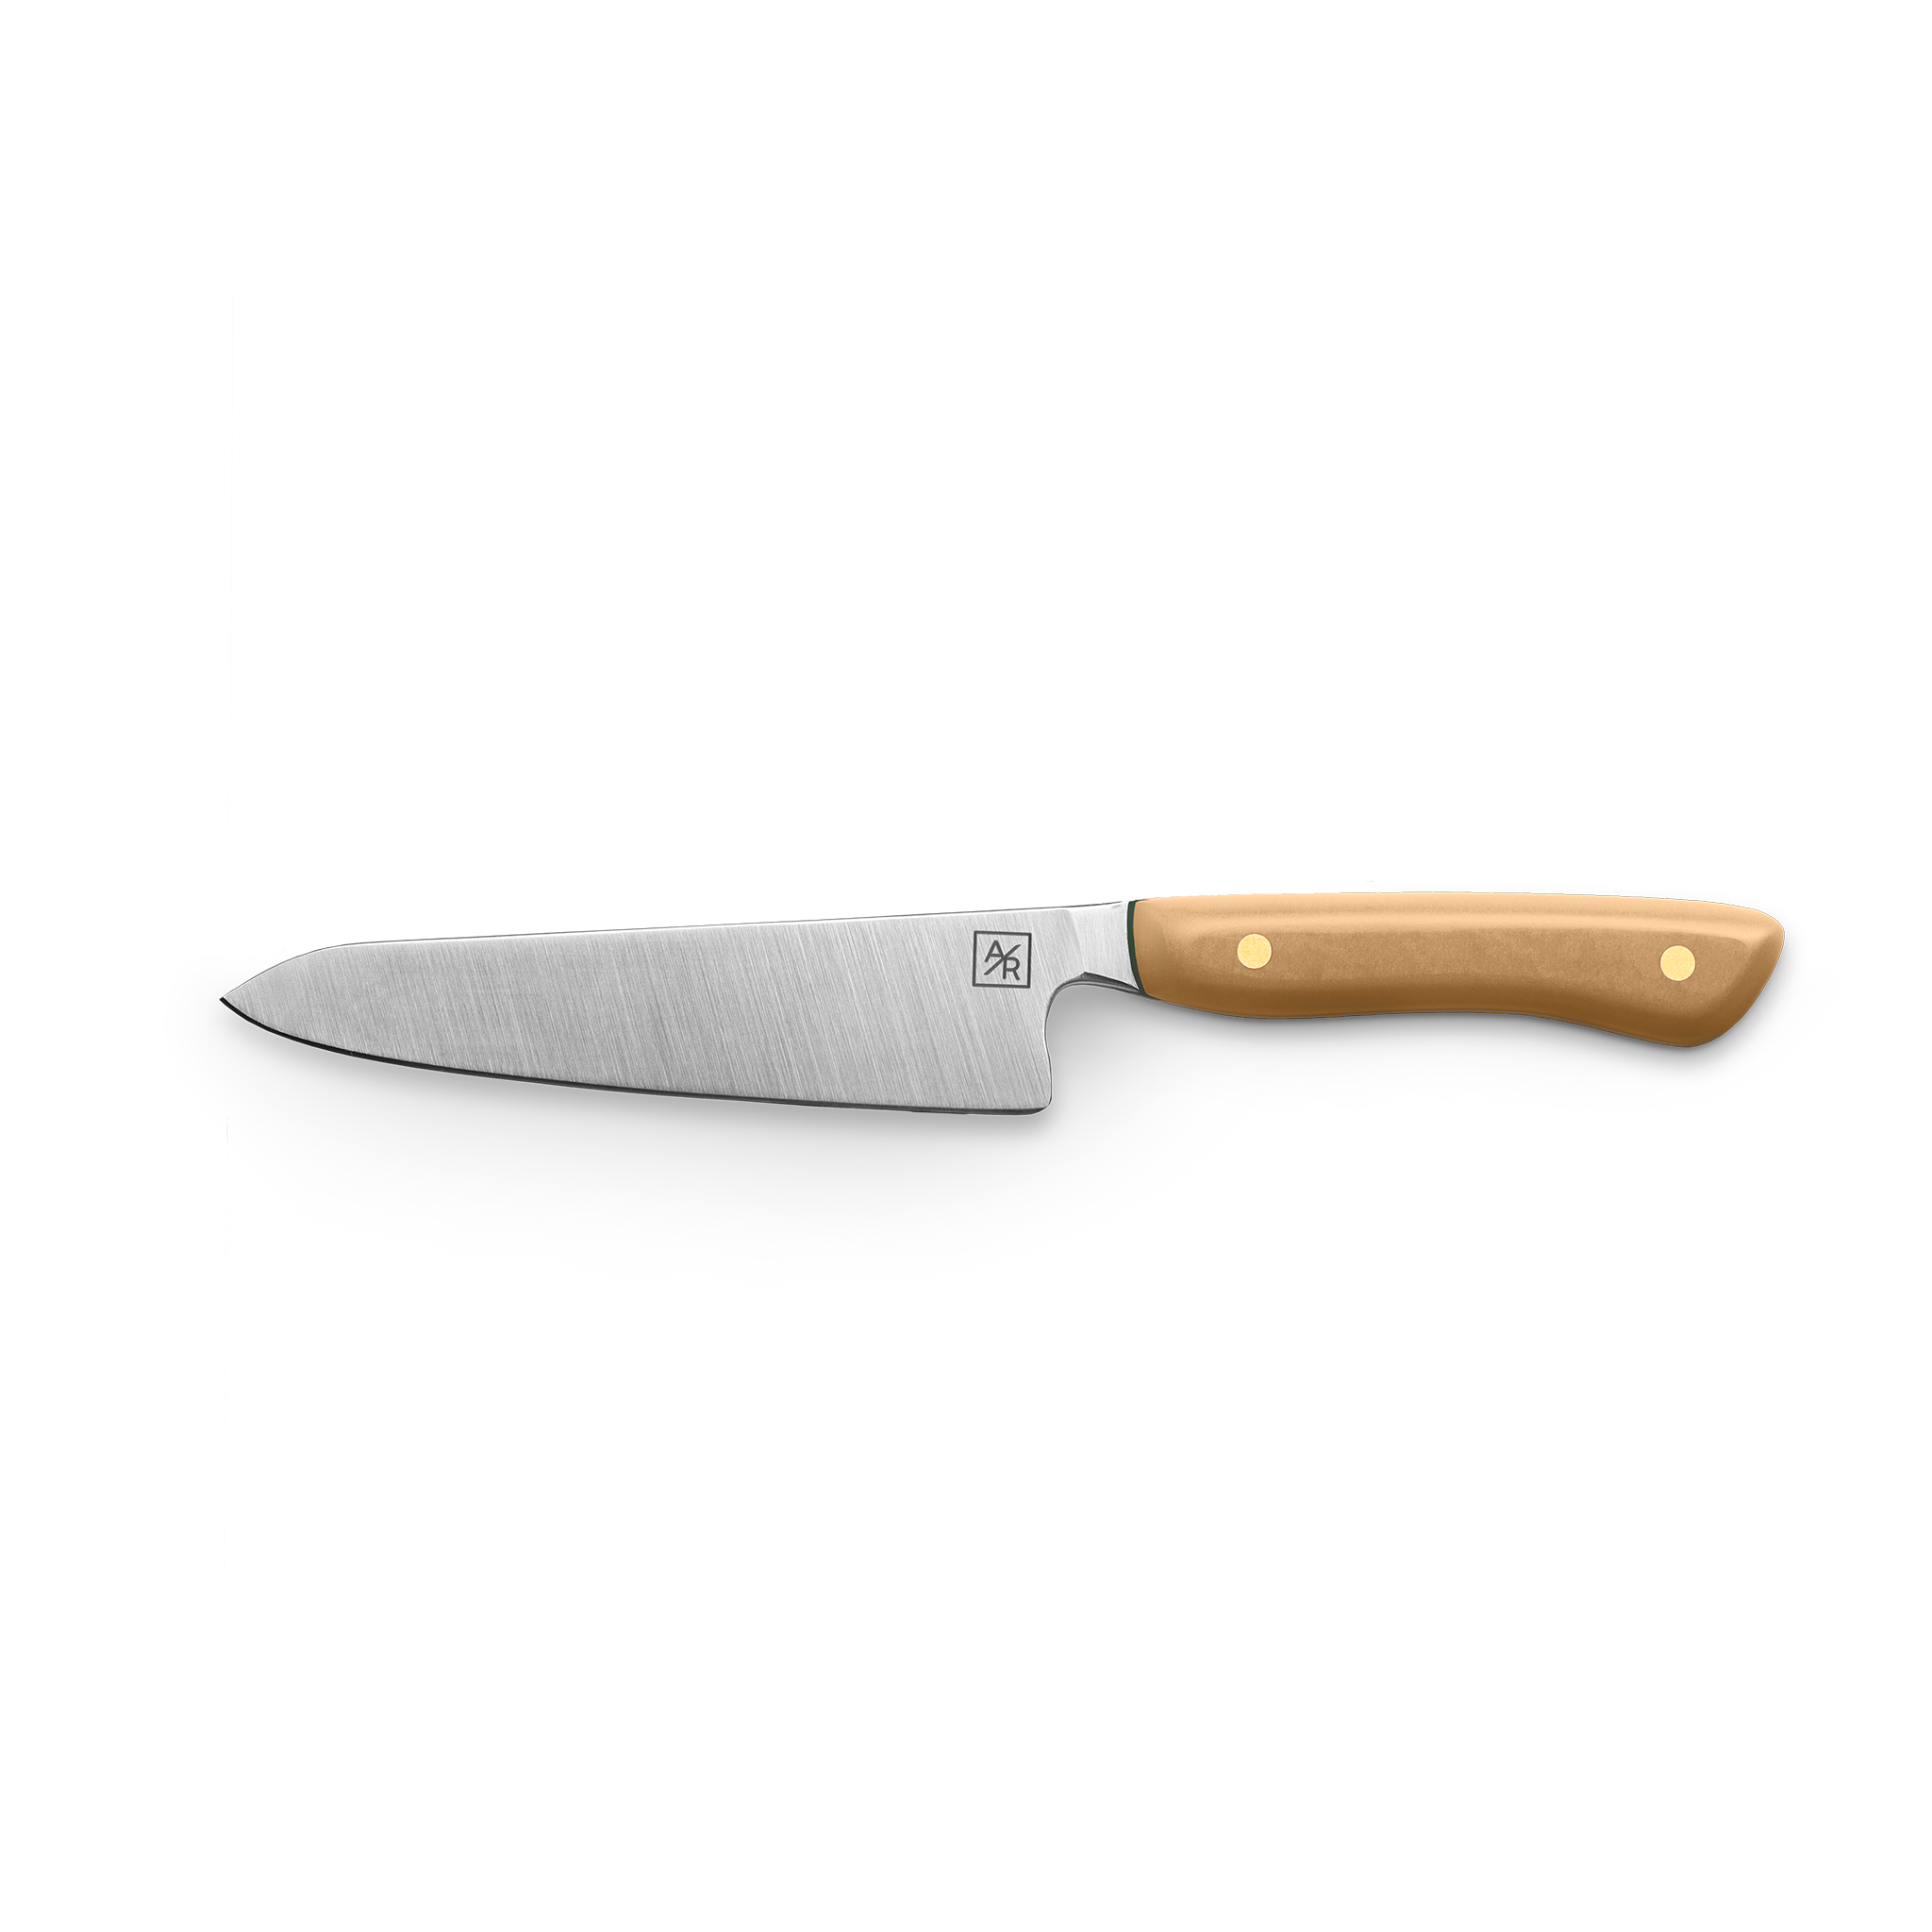 Lanvin Escargot!, little.knife